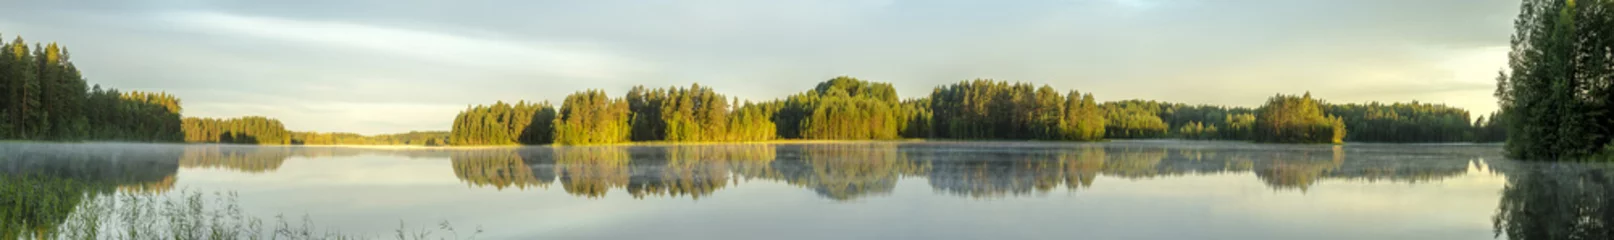 Photo sur Plexiglas Panoramique vue panoramique sur la rive calme du lac en Europe avec brouillard, reflet des arbres et verdure à l& 39 aube